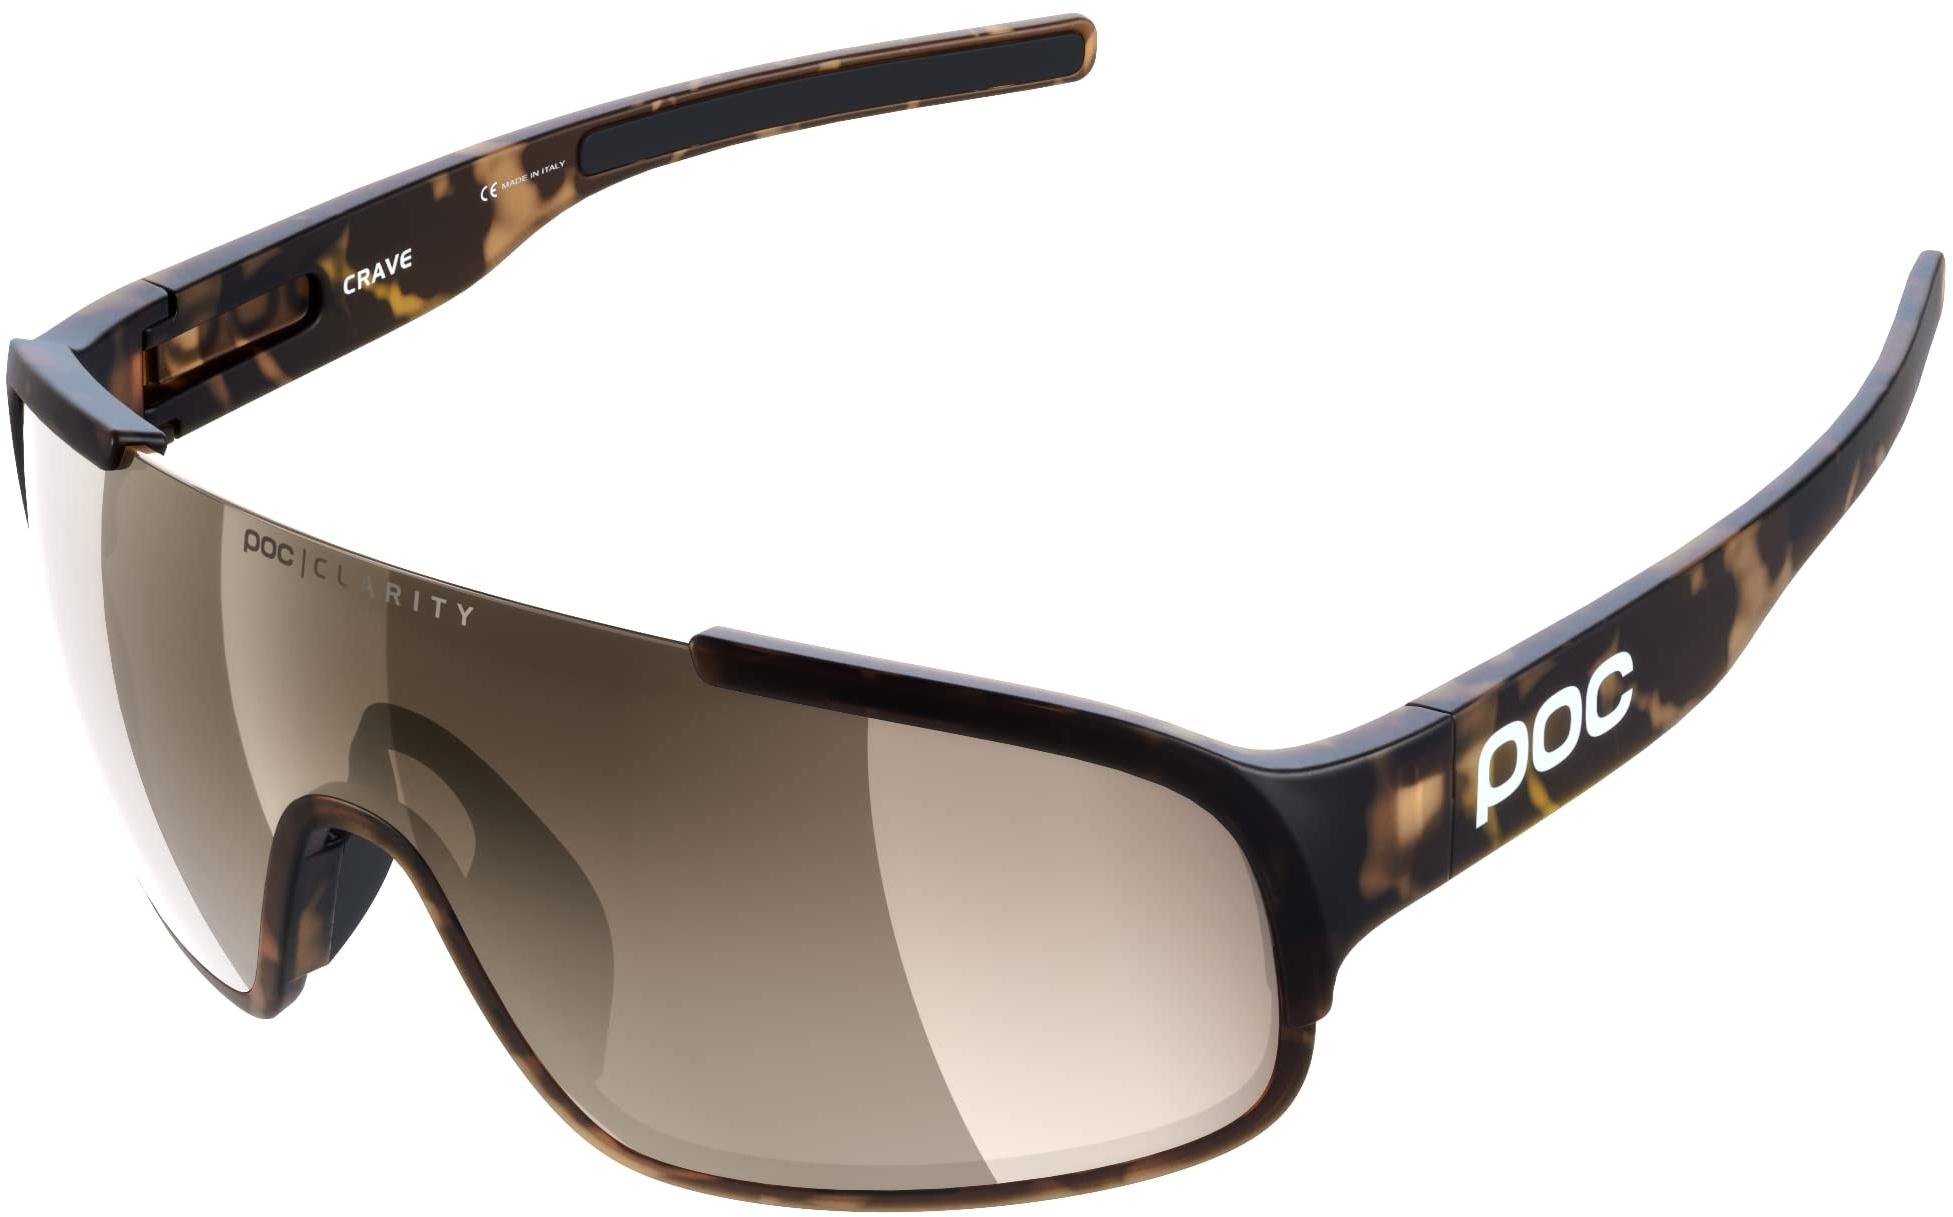 POC Crave Sonnenbrille - Sportbrille mit einem leichten, flexiblen und strapazierfähigen Grilamid-Rahmen ideal für jede sportliche Herausforderung,Tortoise Brown,Einheitsgröße